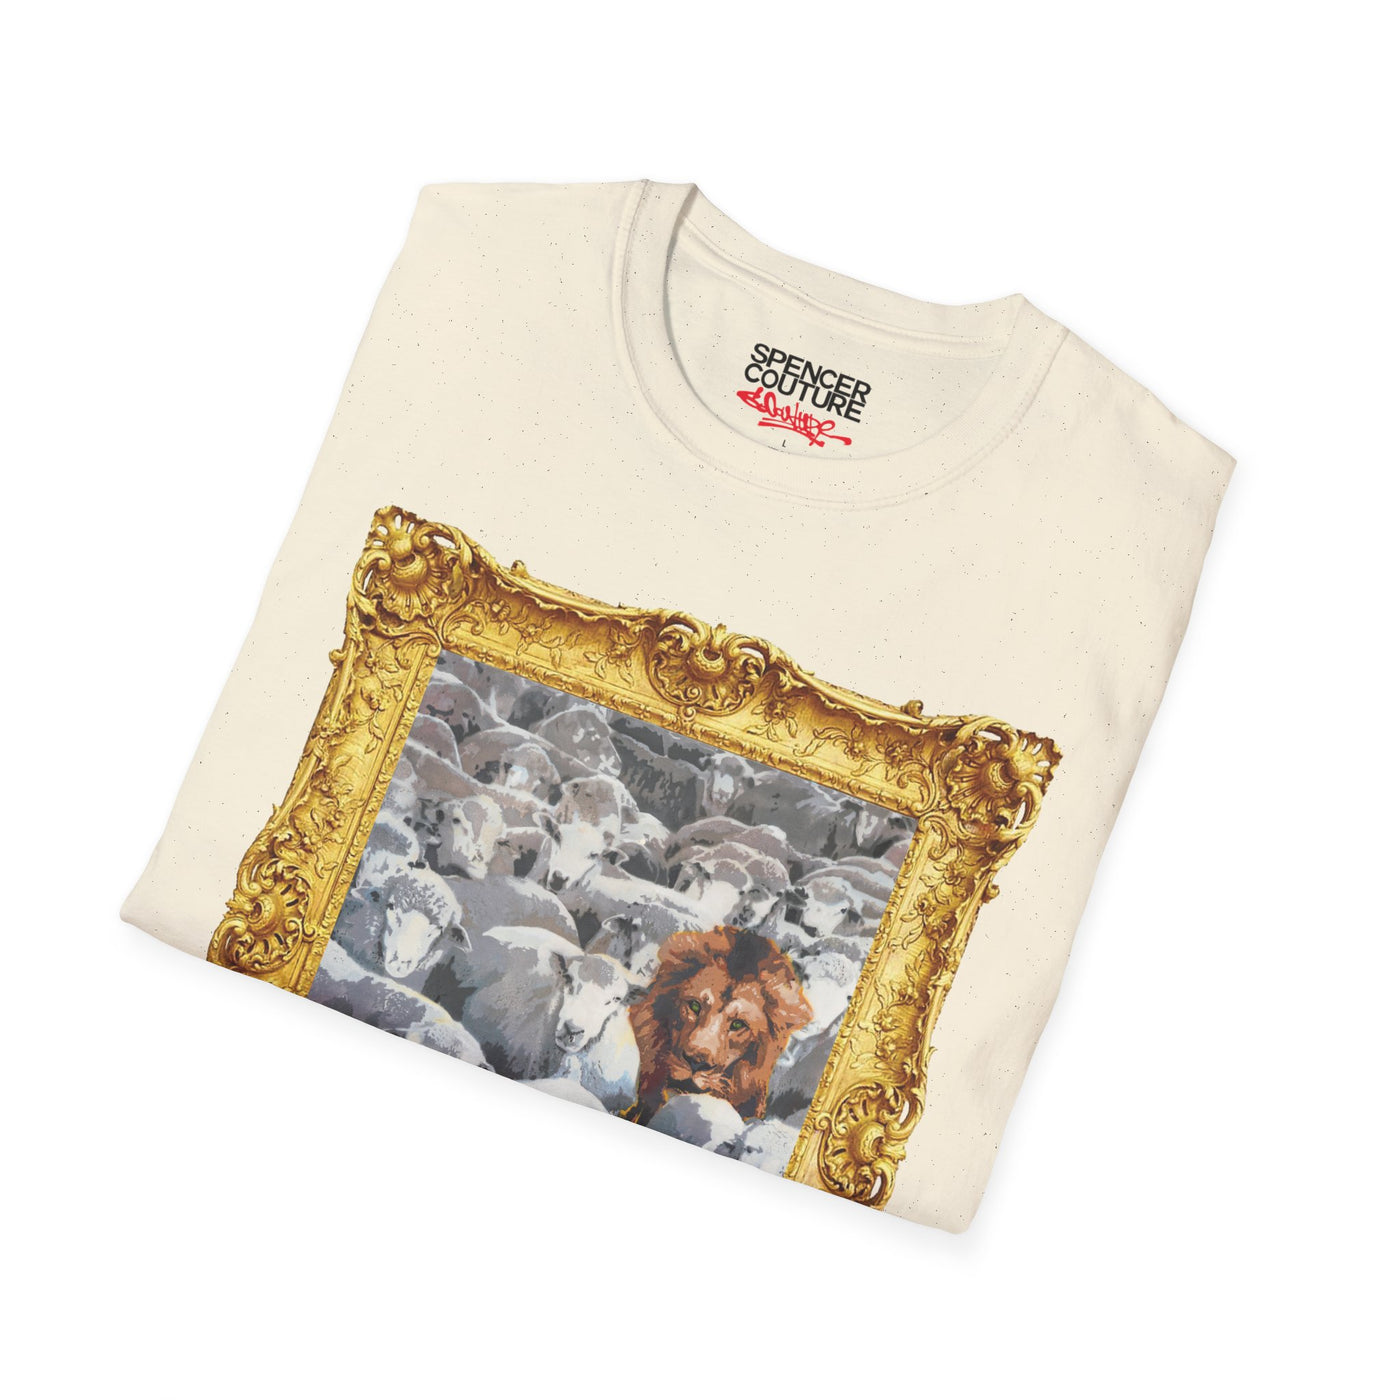 Lion Among Sheep Artist T-Shirt